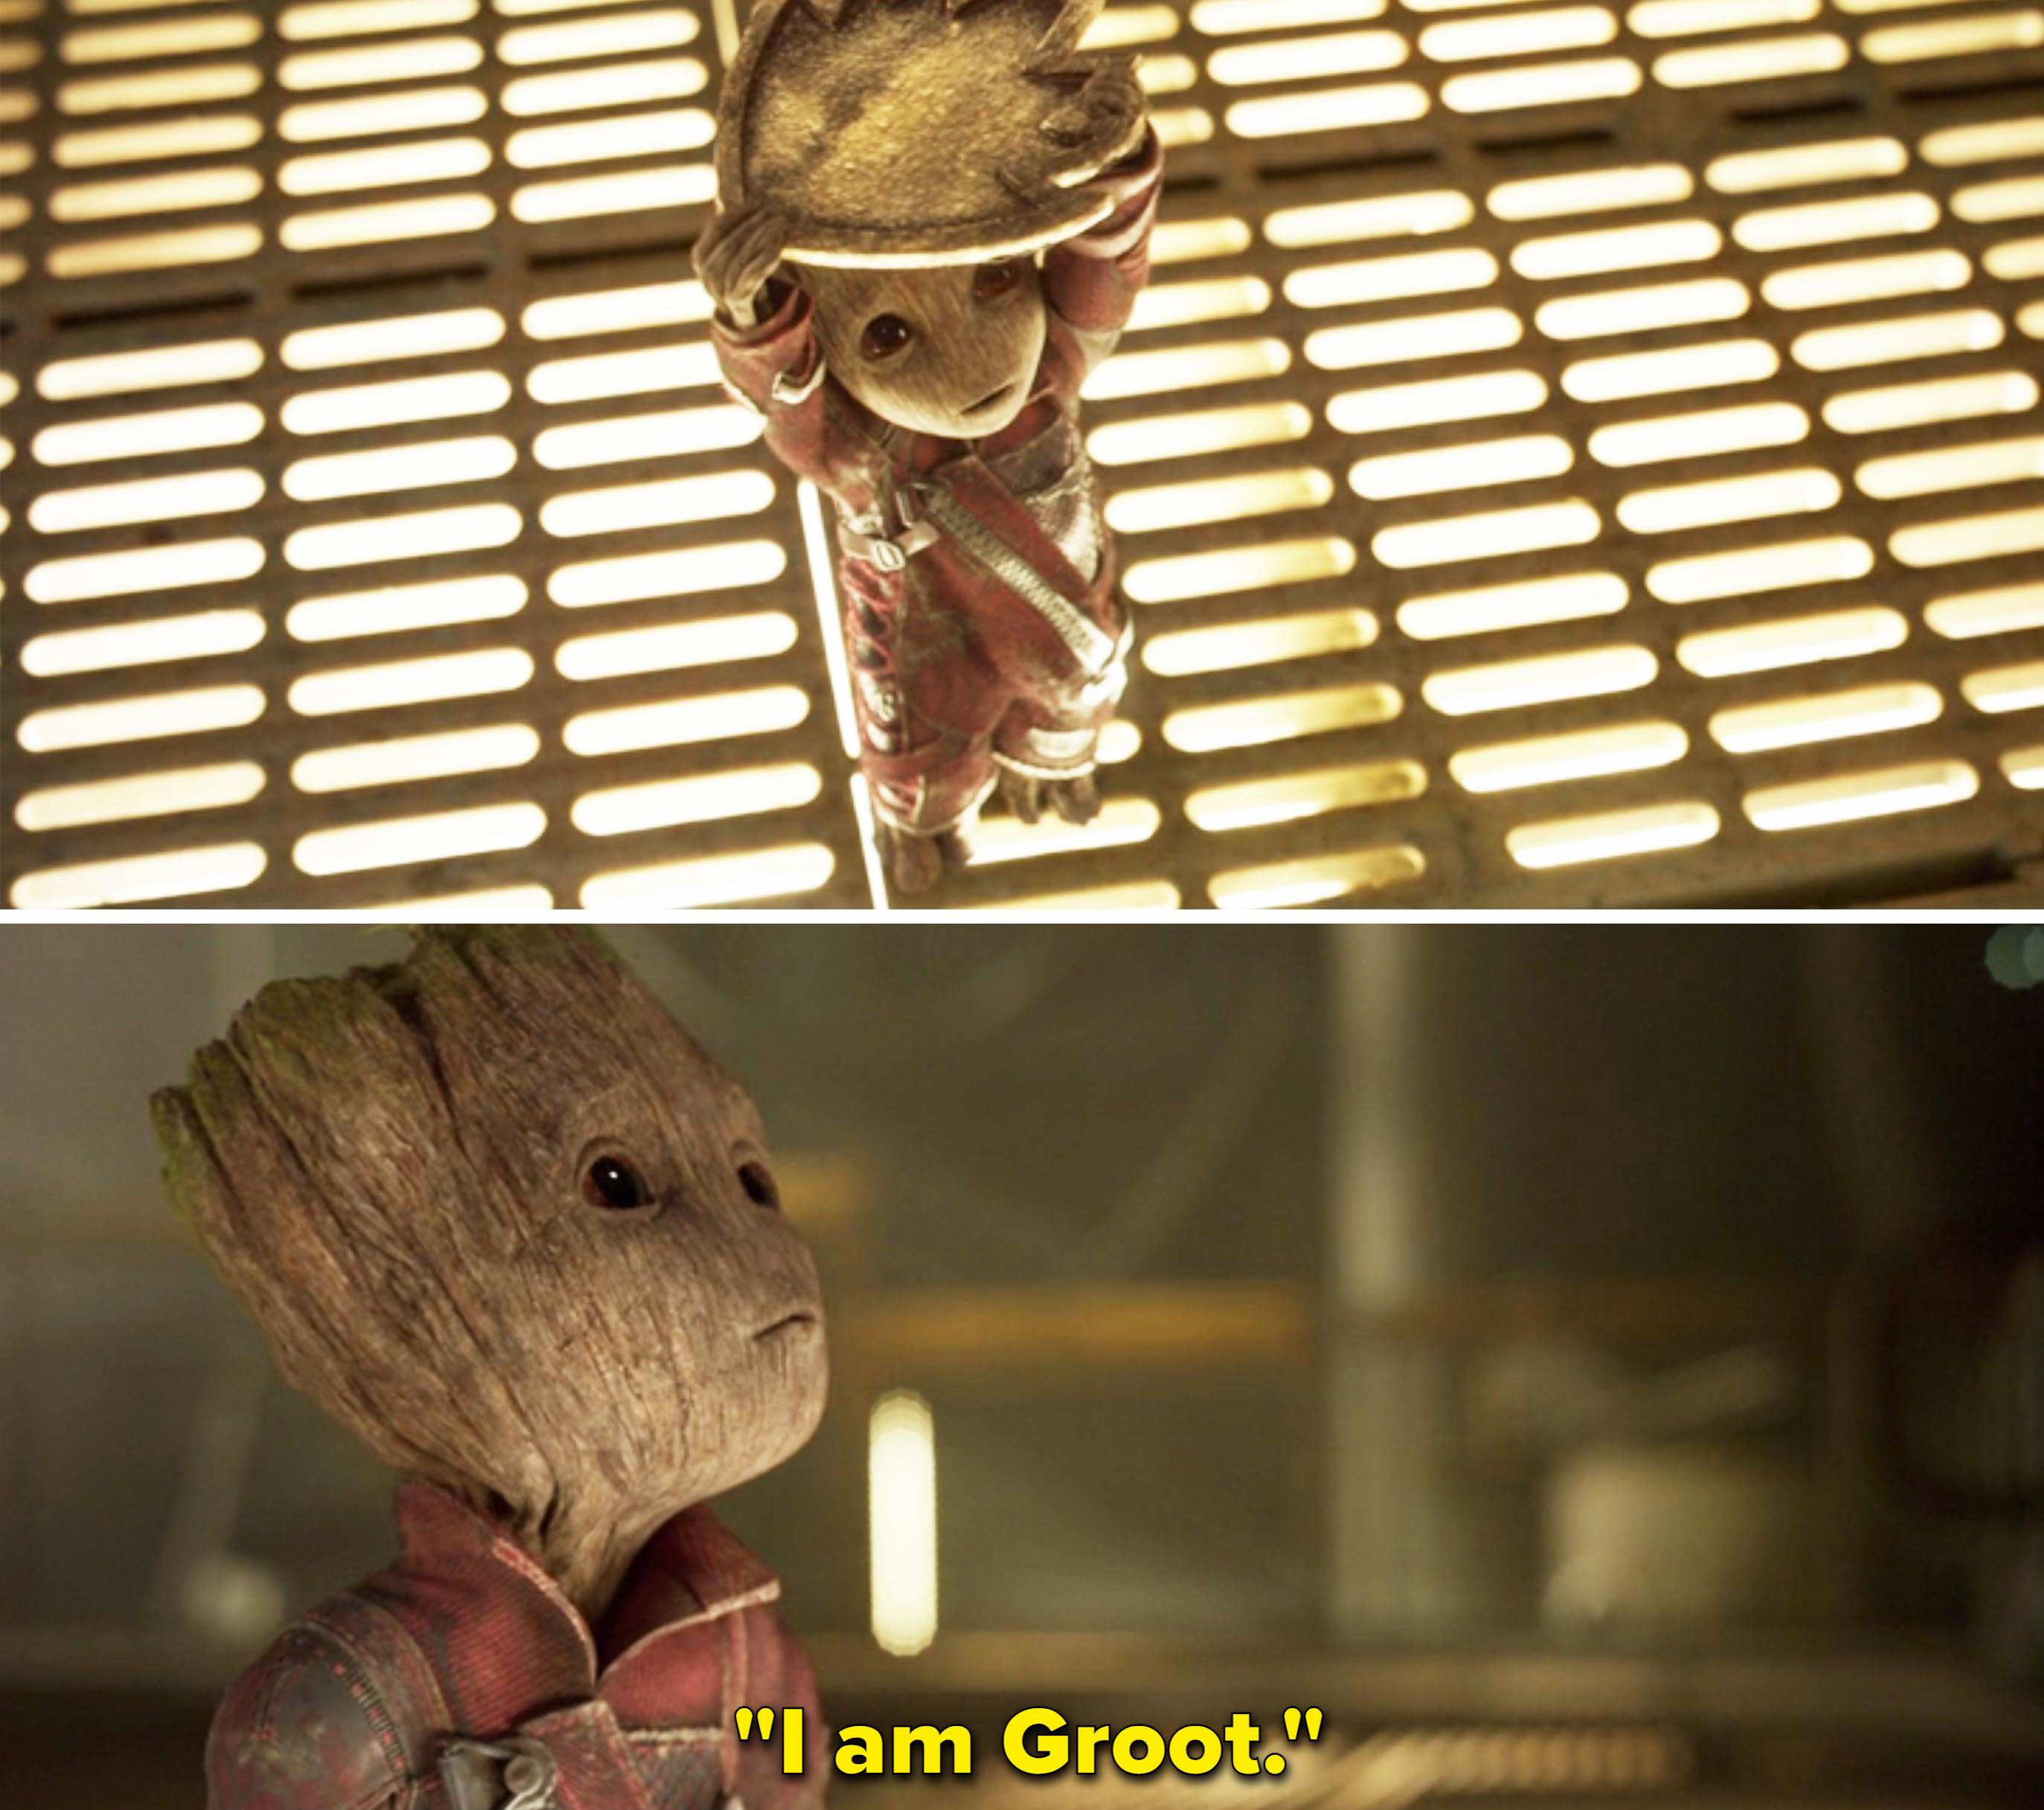 &quot;I am Groot.&quot;